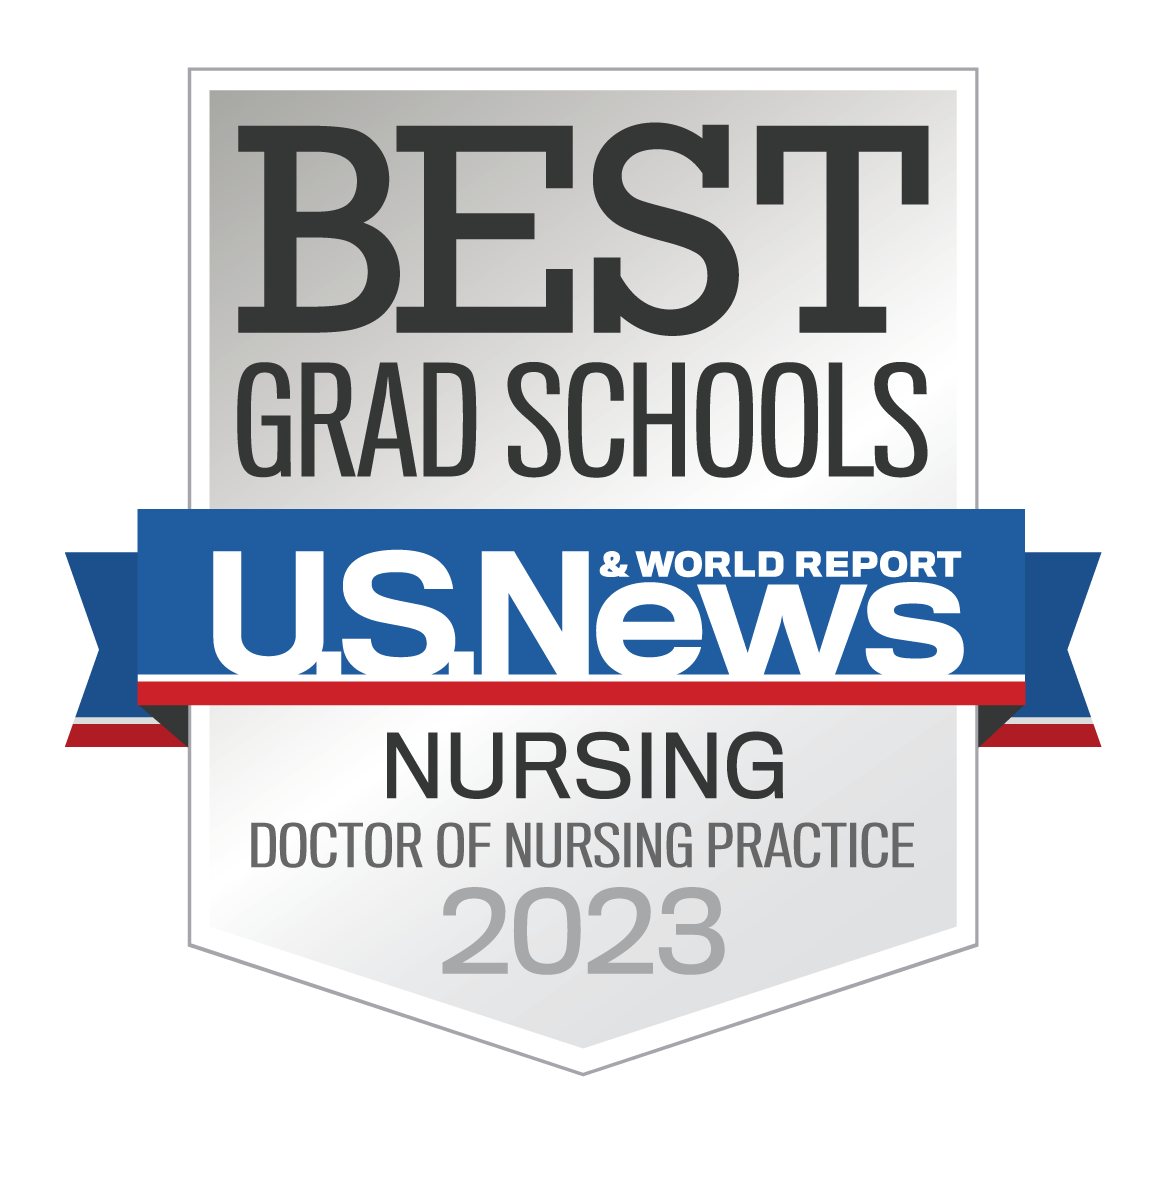 U.S. News Best Grad Schools badge for doctor of nursing practice program 2023 - 2024